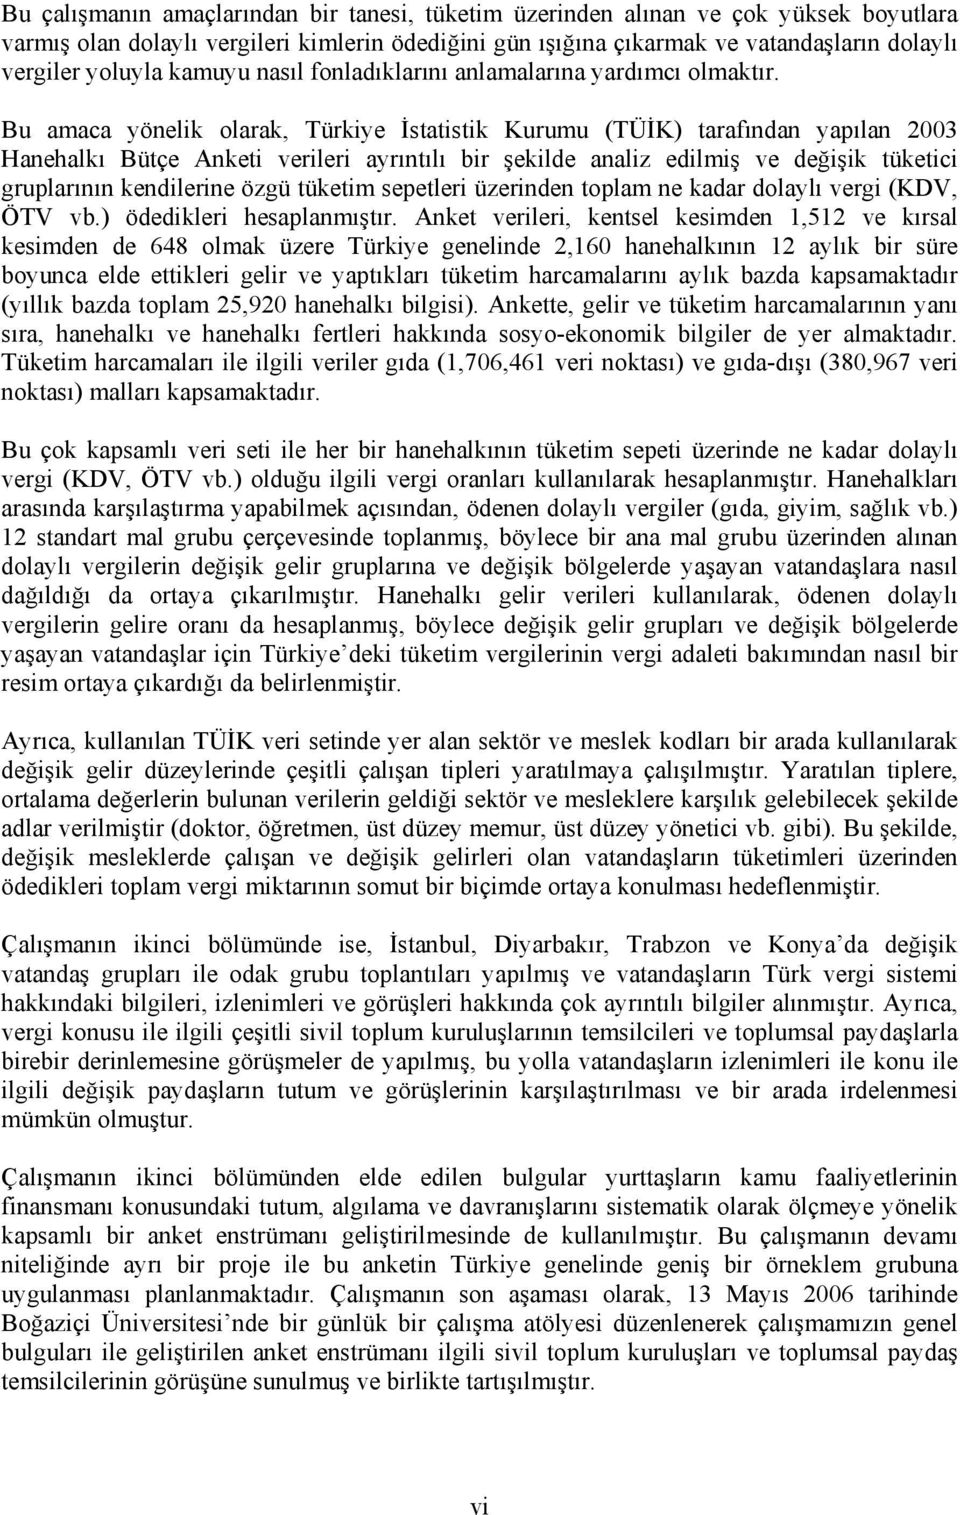 Bu amaca yönelik olarak, Türkiye İstatistik Kurumu (TÜİK) tarafından yapılan 2003 Hanehalkı Bütçe Anketi verileri ayrıntılı bir şekilde analiz edilmiş ve değişik tüketici gruplarının kendilerine özgü